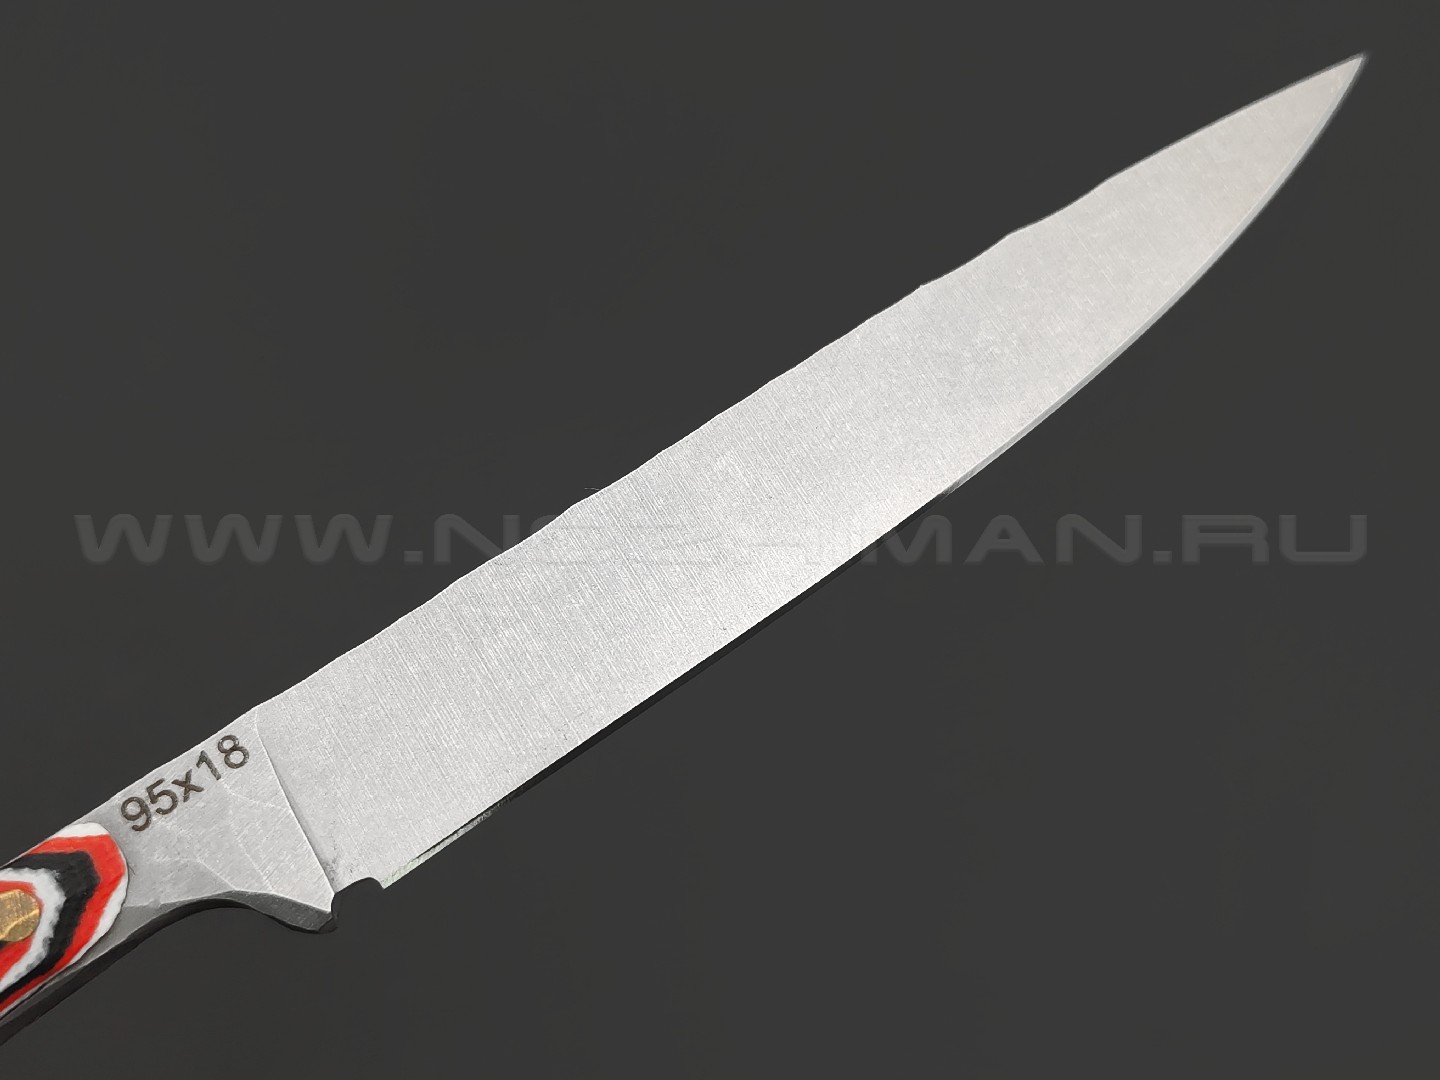 Андрей Кулаков нож KUL023 сталь 95Х18, рукоять G10 black-red & white